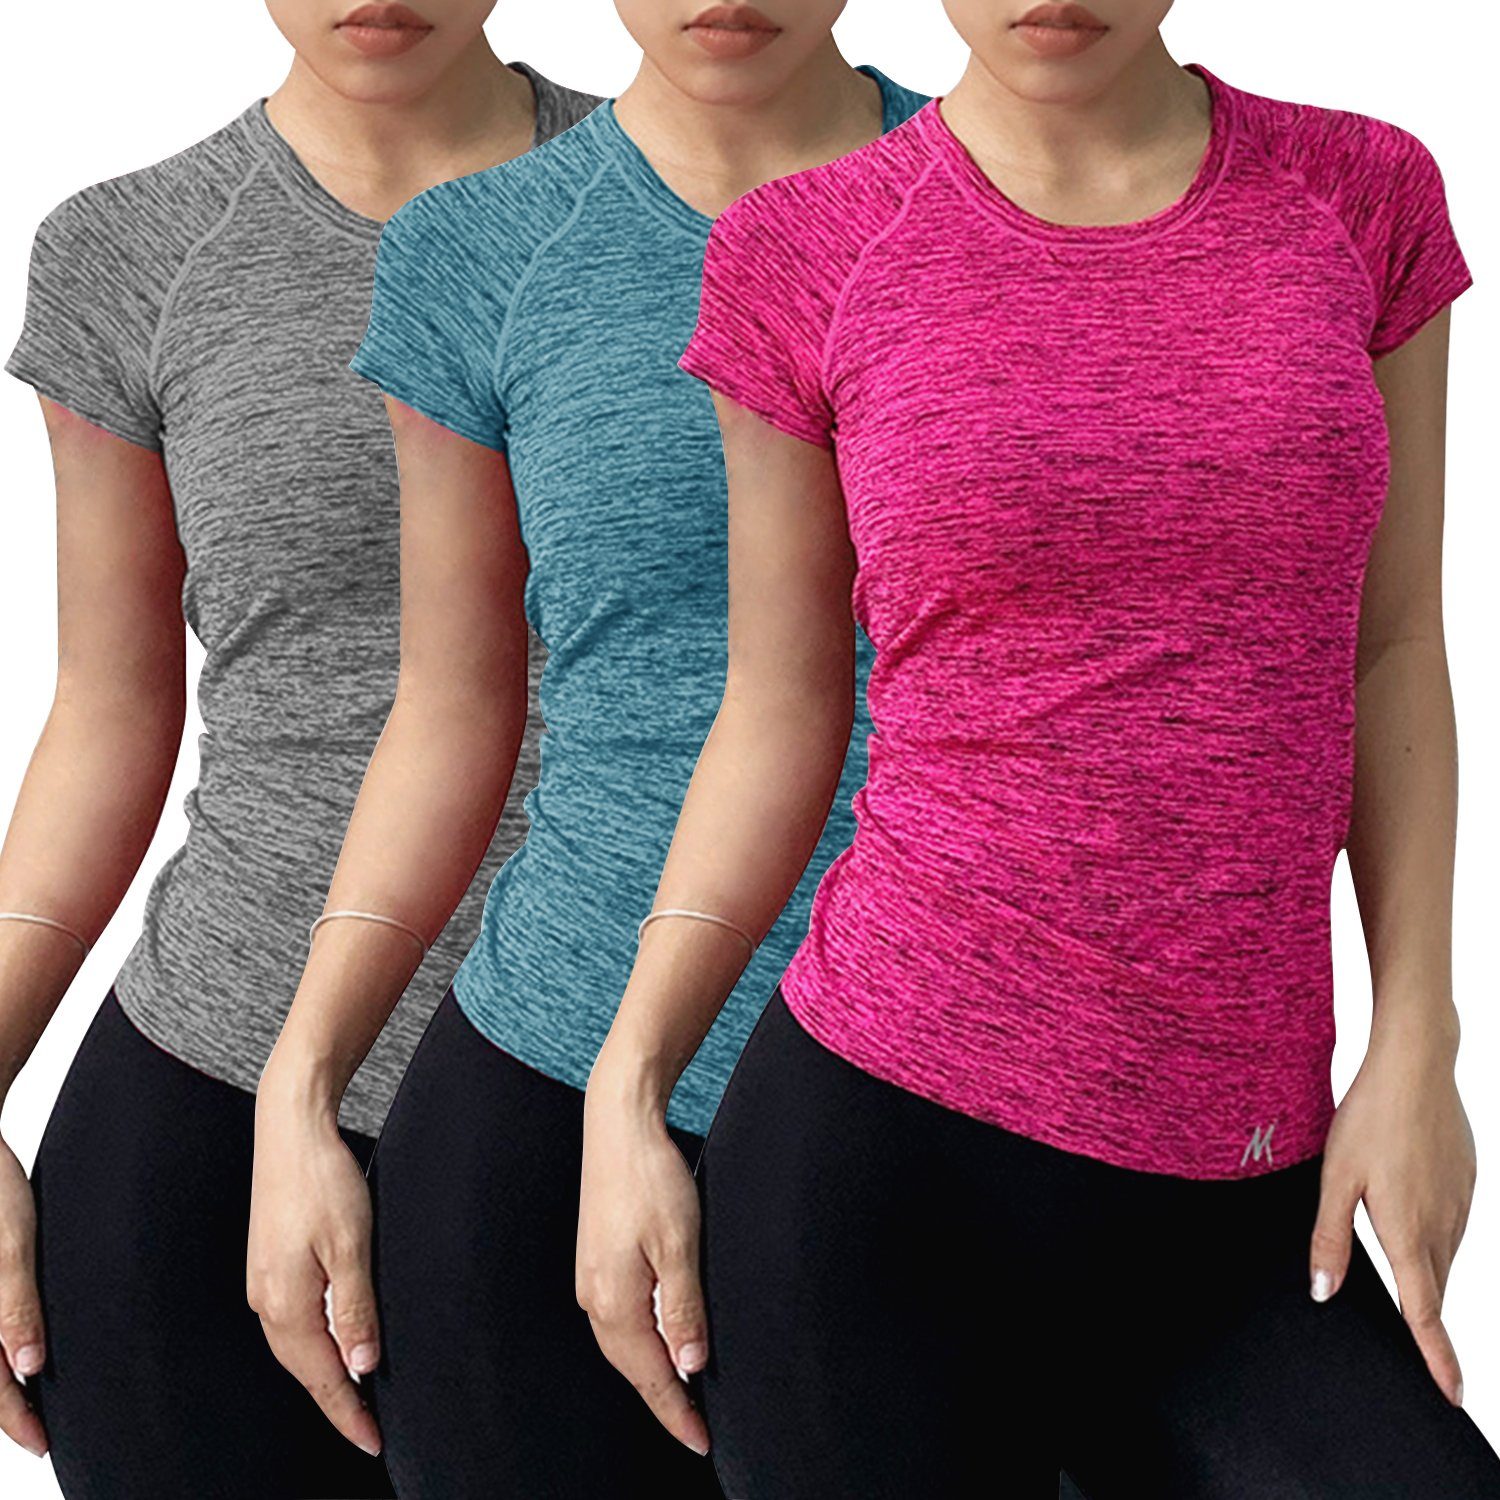 Libella T-Shirt 1502 Training Yoga Sportshirt T-Shirt 4er-Pack-Zufall 3er-Pack) Top Laufshirt Kurzarm Damen (3er-Pack